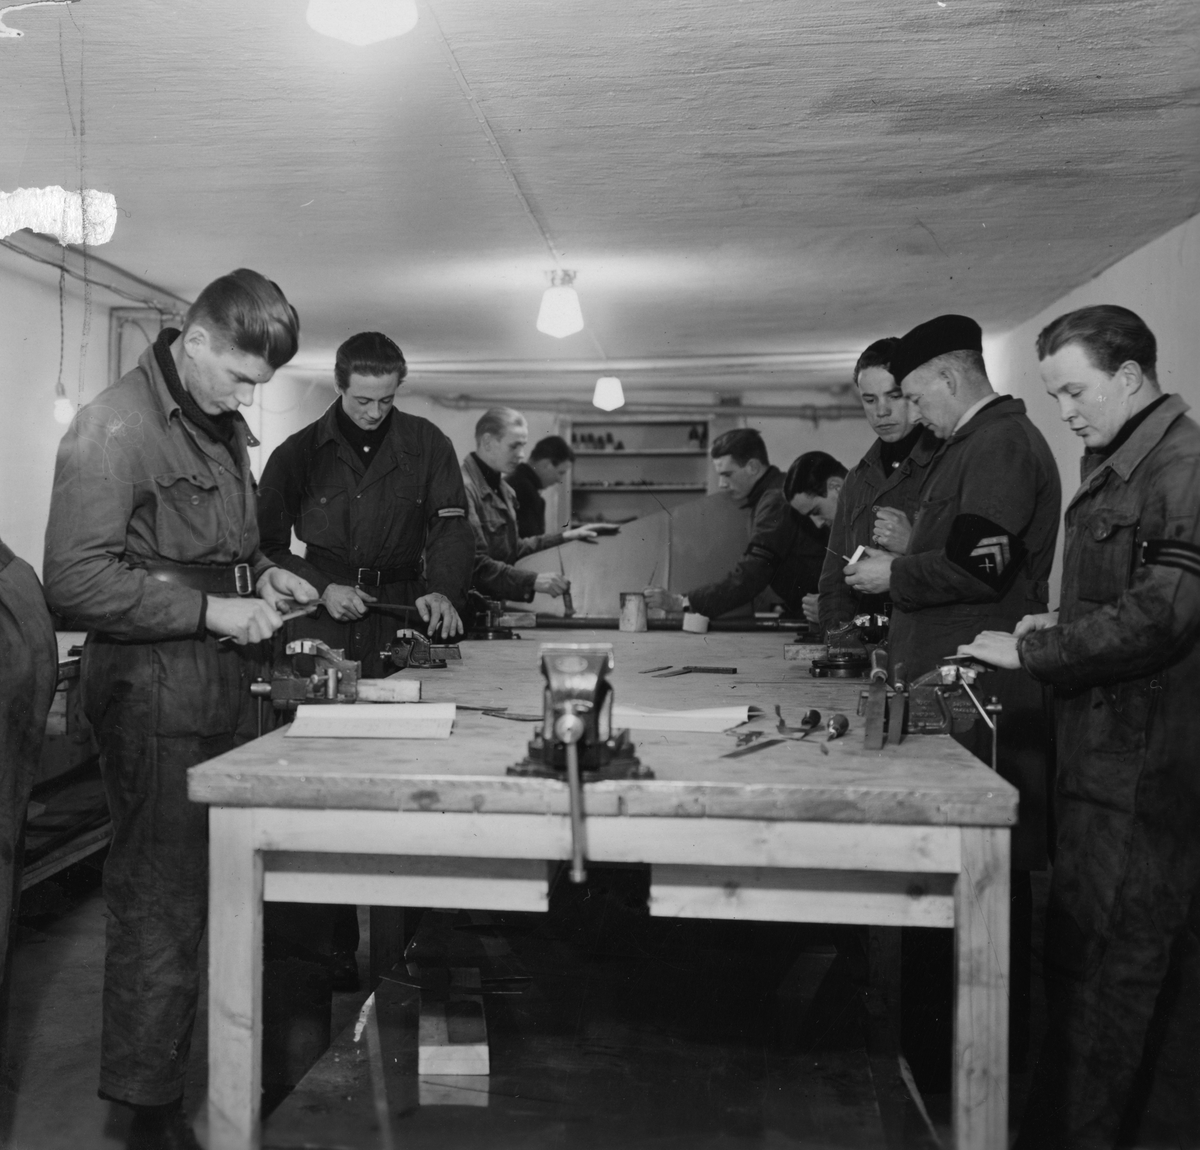 Elever i arbete under verkstadslära i kasern I, på F 2 Roslagens flygflottilj, 1939.